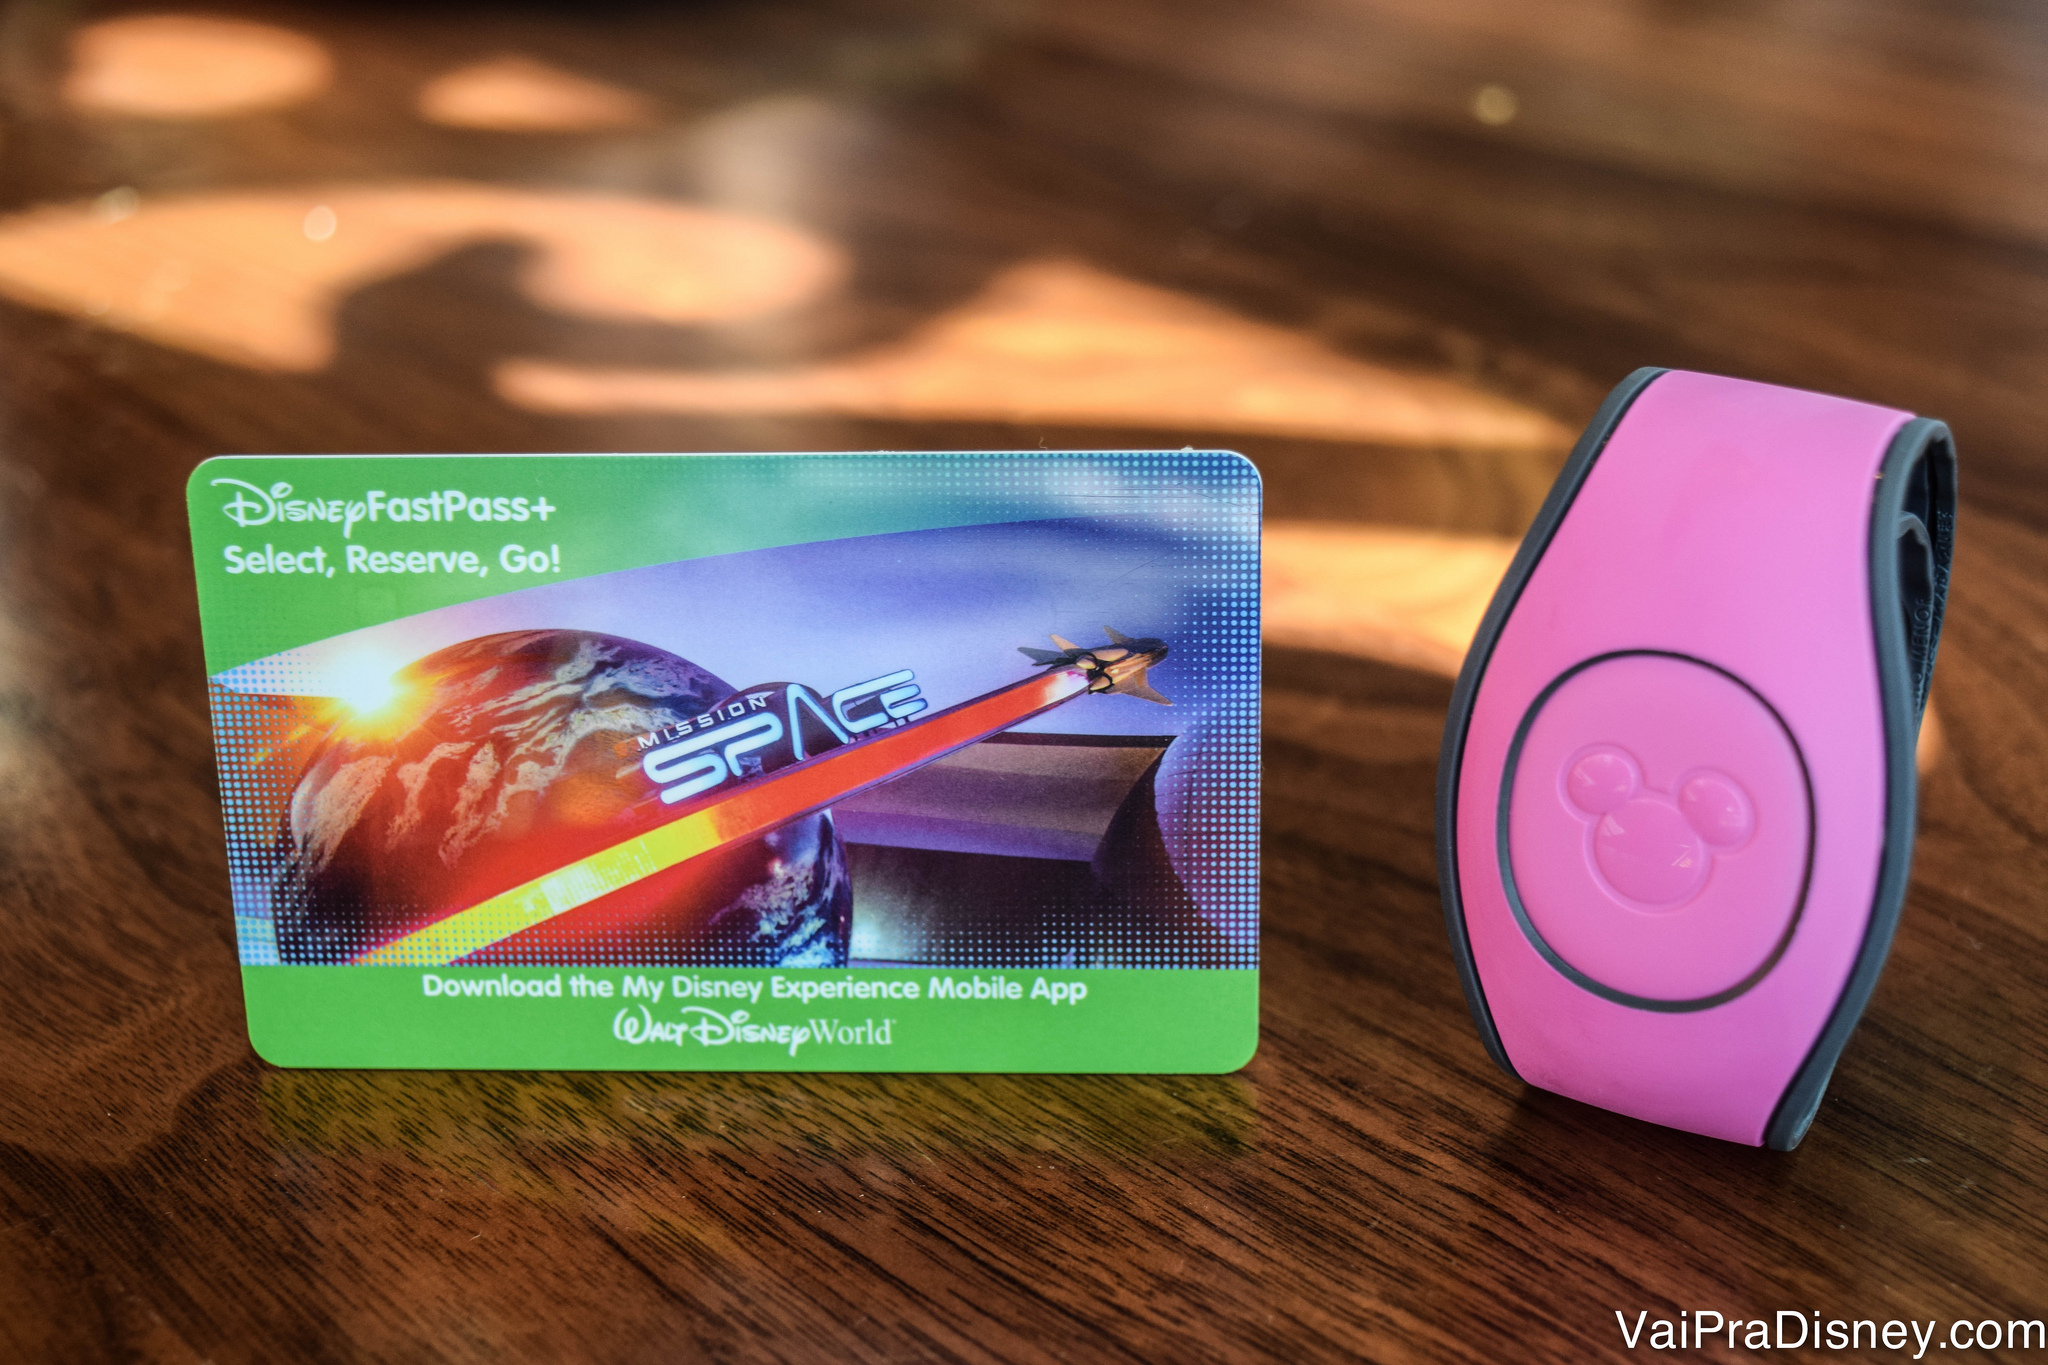 O ingresso pode ser usando em formato de cartão ou com a MagicBand. Imagem do cartão magnético que funciona como ingresso da Disney, ao lado de uma MagicBand cor-de-rosa.